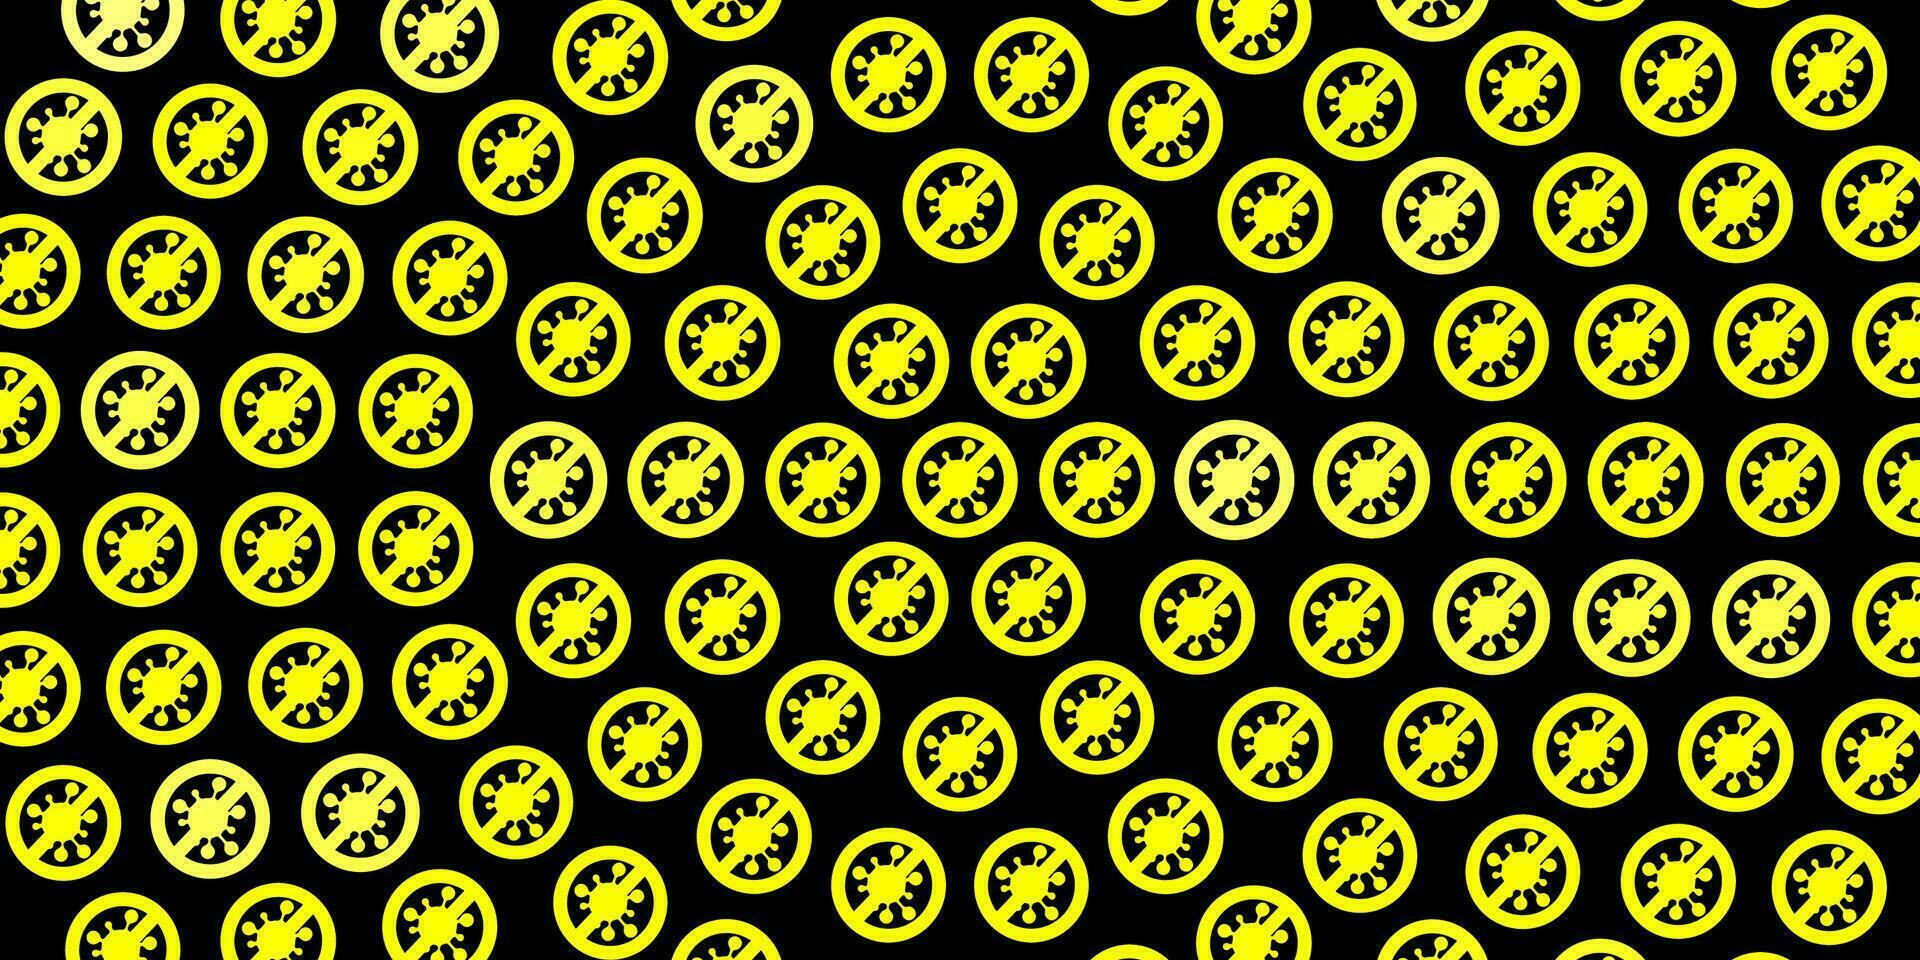 mörk gul vektor bakgrund med covid-19 symboler.